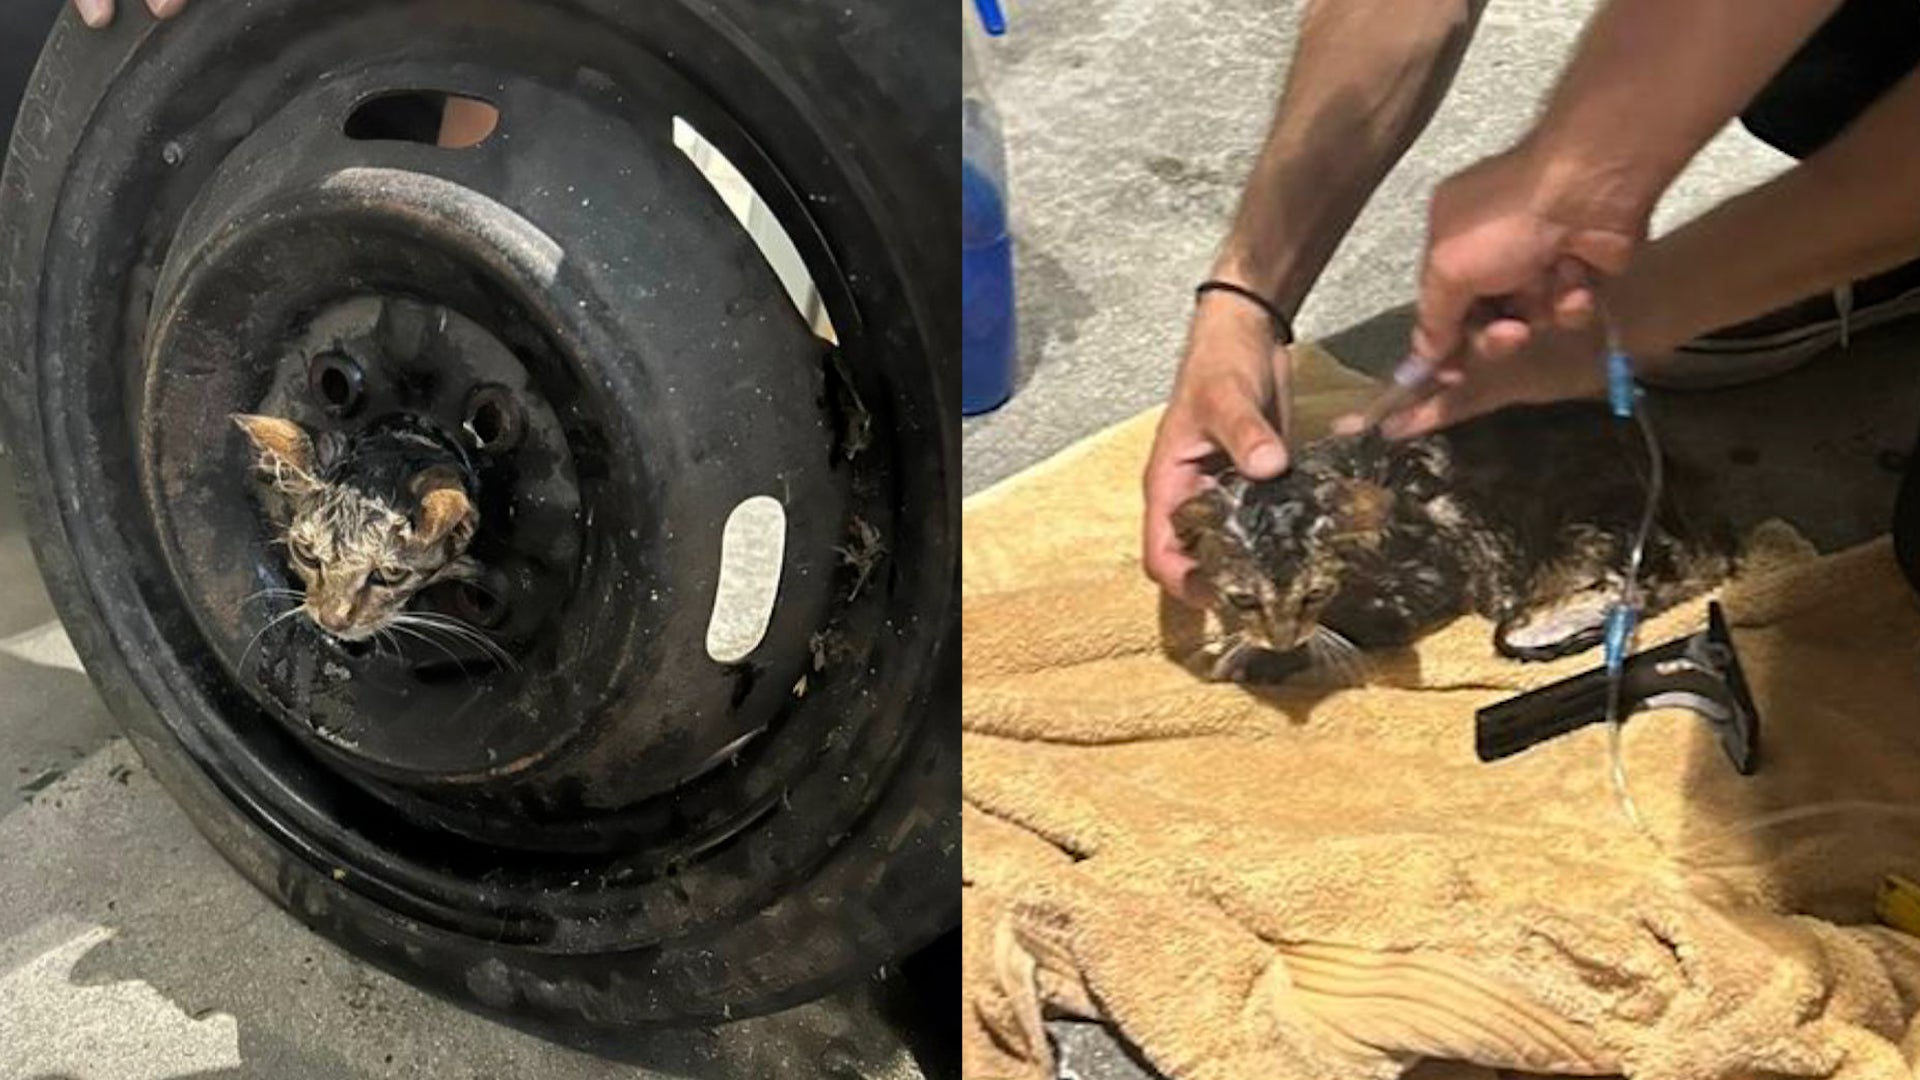 Firefighters Rescue Kitten Stuck Inside a Tire